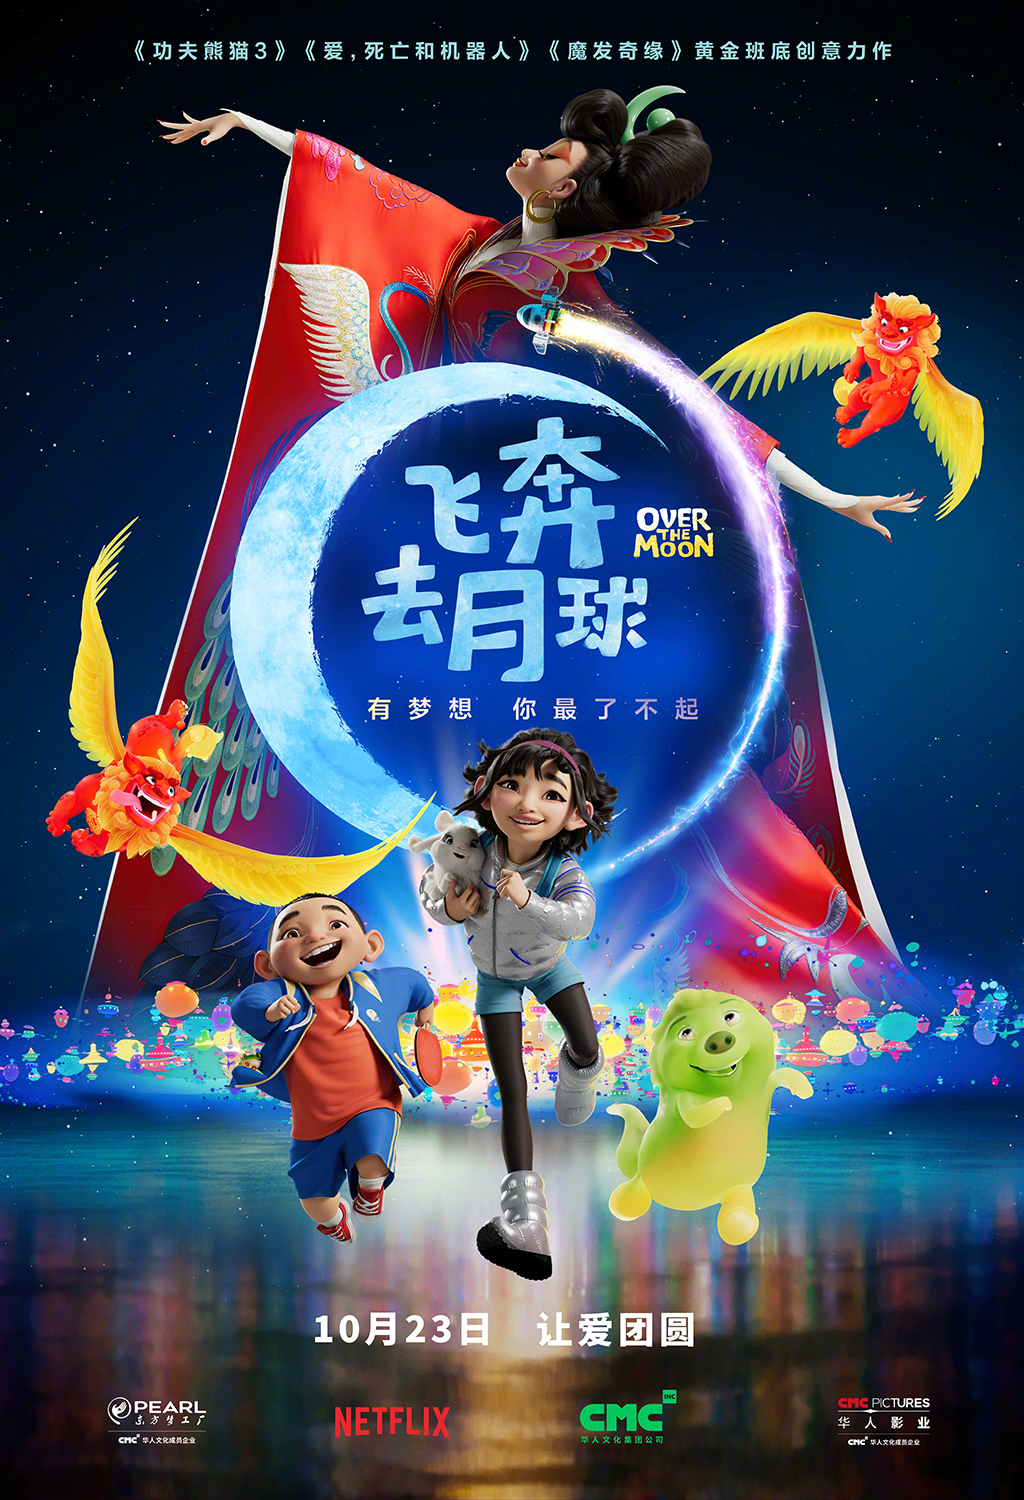 动画影戏《奔驰去月球》中文预告 国内定档10月23日